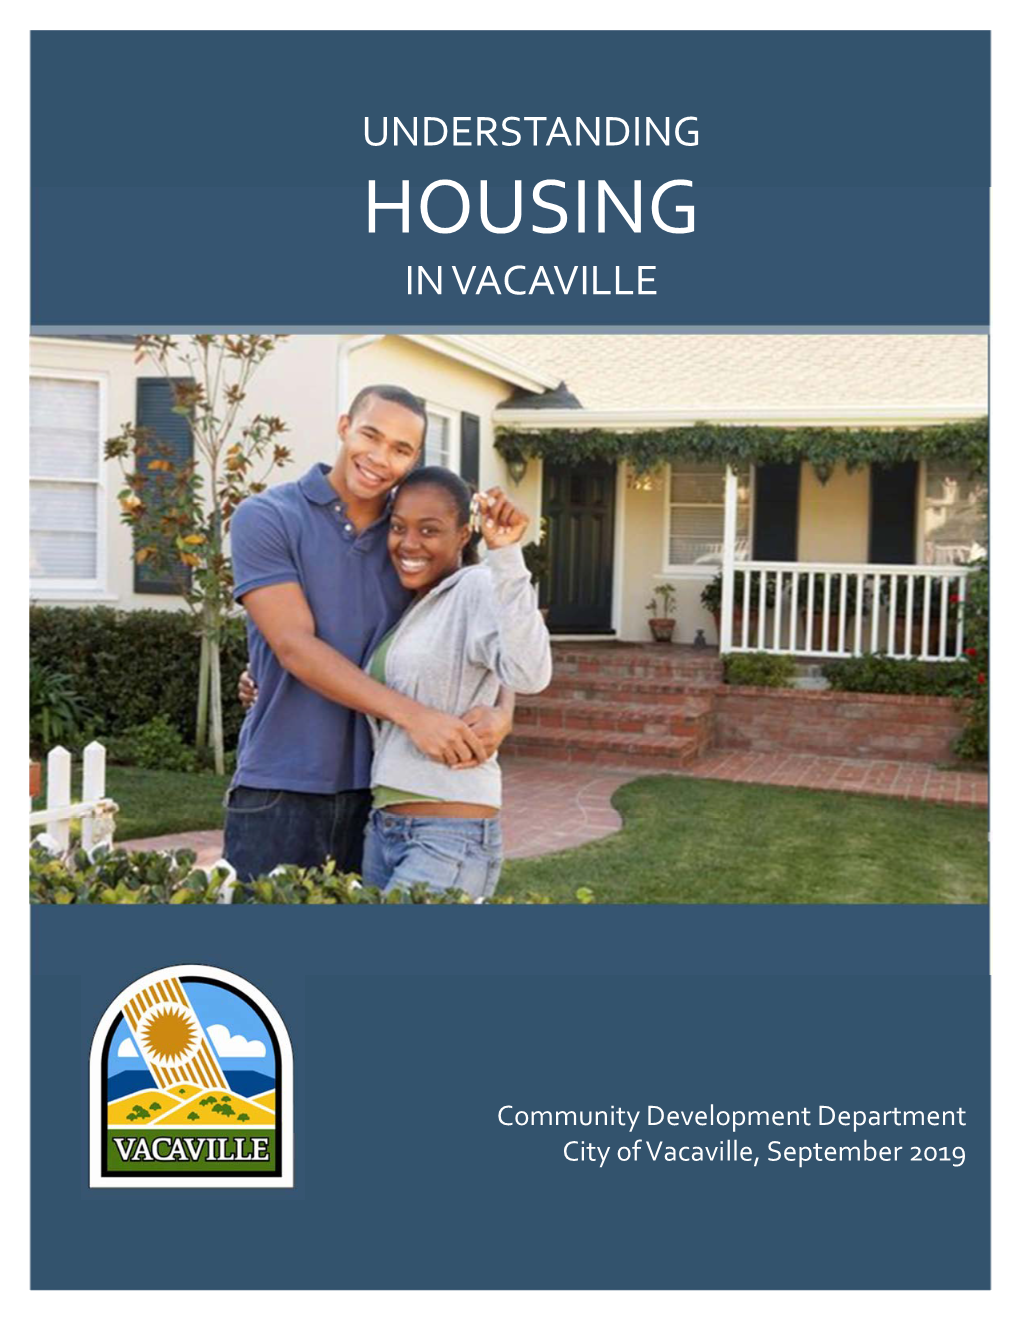 Understanding Housing Brochure 2019-0912.Xps